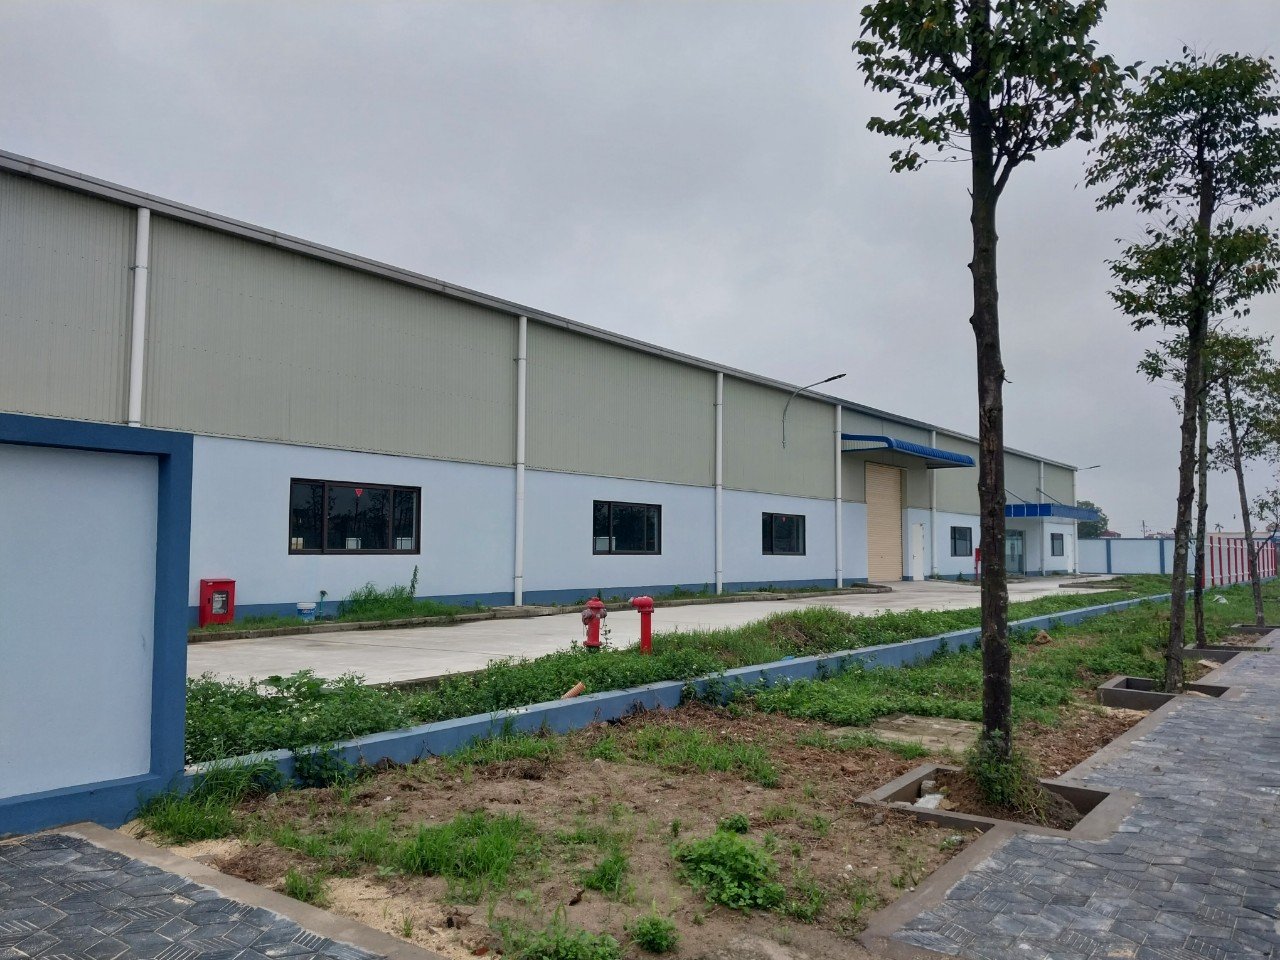 Bán nhà máy 1.7ha trong khu công nghiệp Hưng yên. Mới xây dựng xong, xưởng tiêu chuẩn quốc tế 1